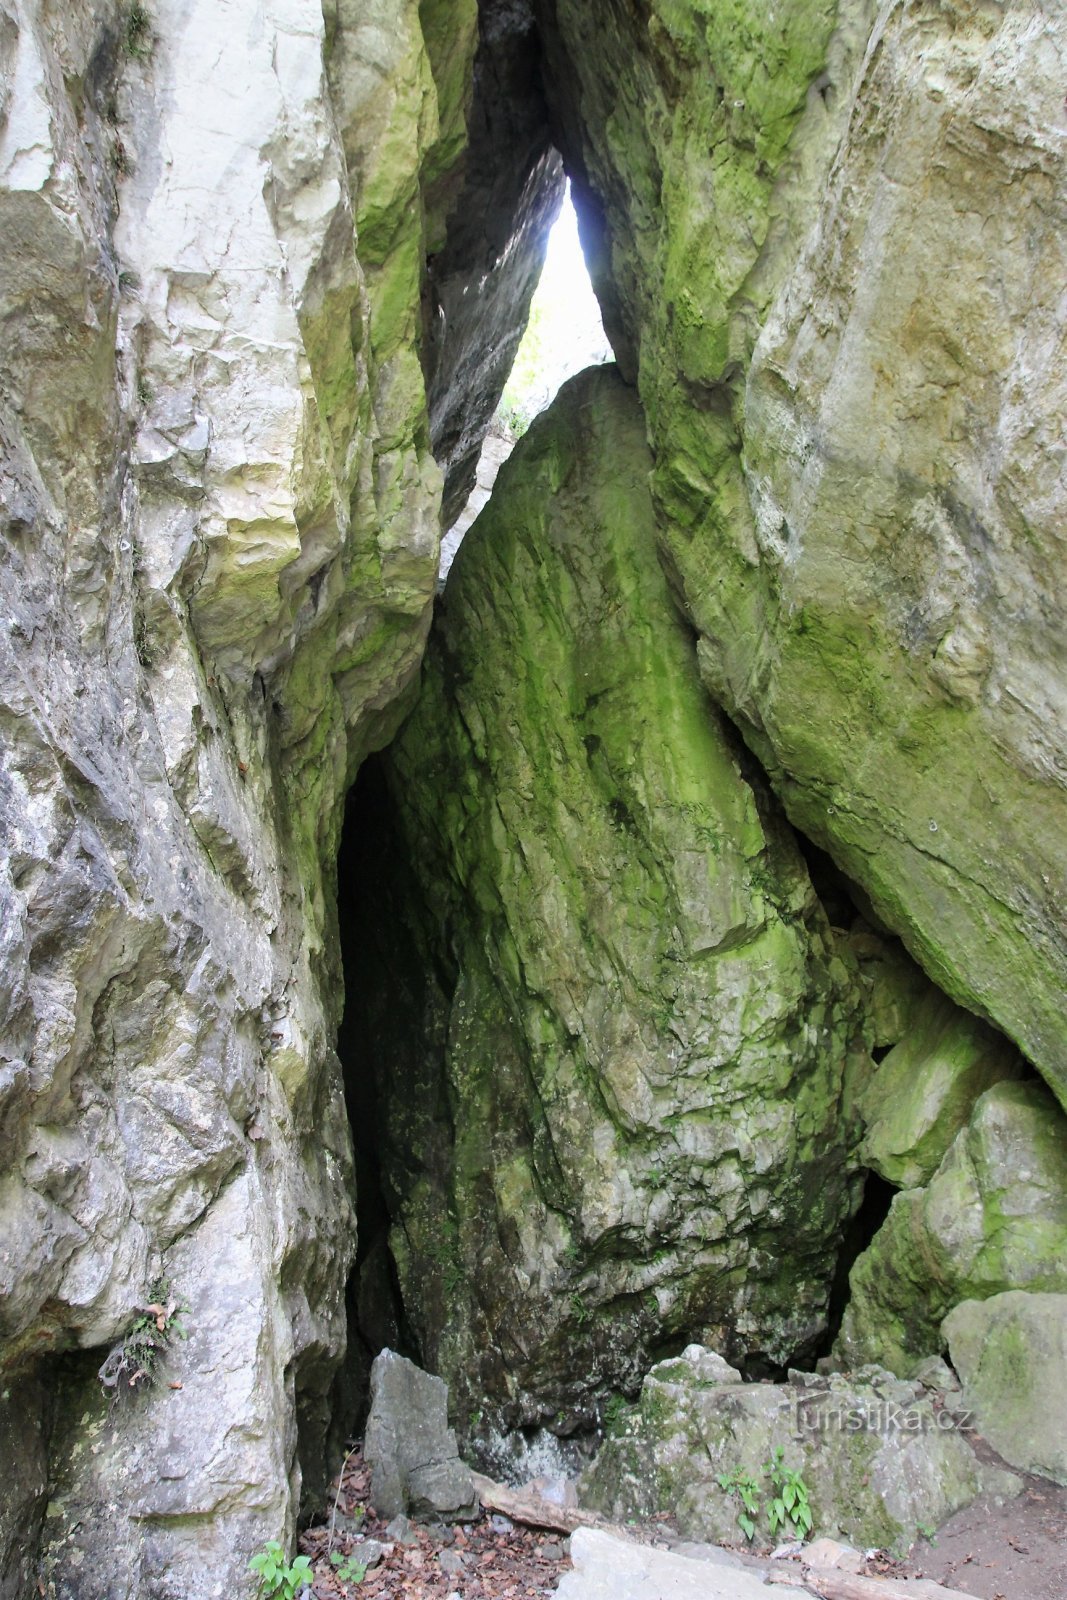 Kallioraossa on sisäänkäynti maanalaiseen